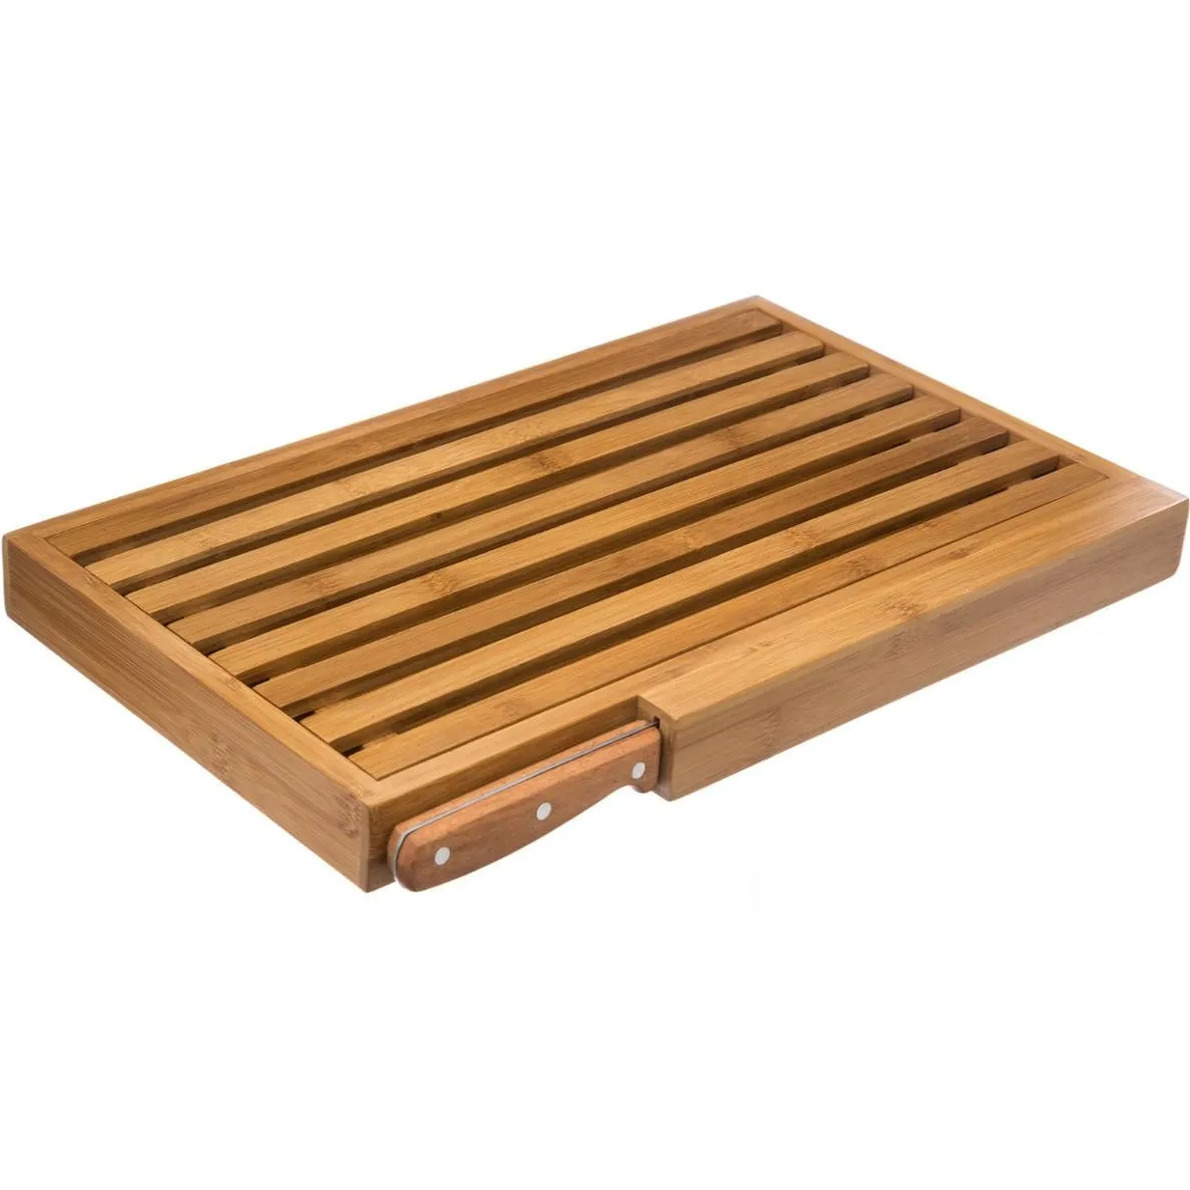 Brood snijplank met kruimel opvangbak 44 x 27 cm van bamboe hout inclusief broodmes